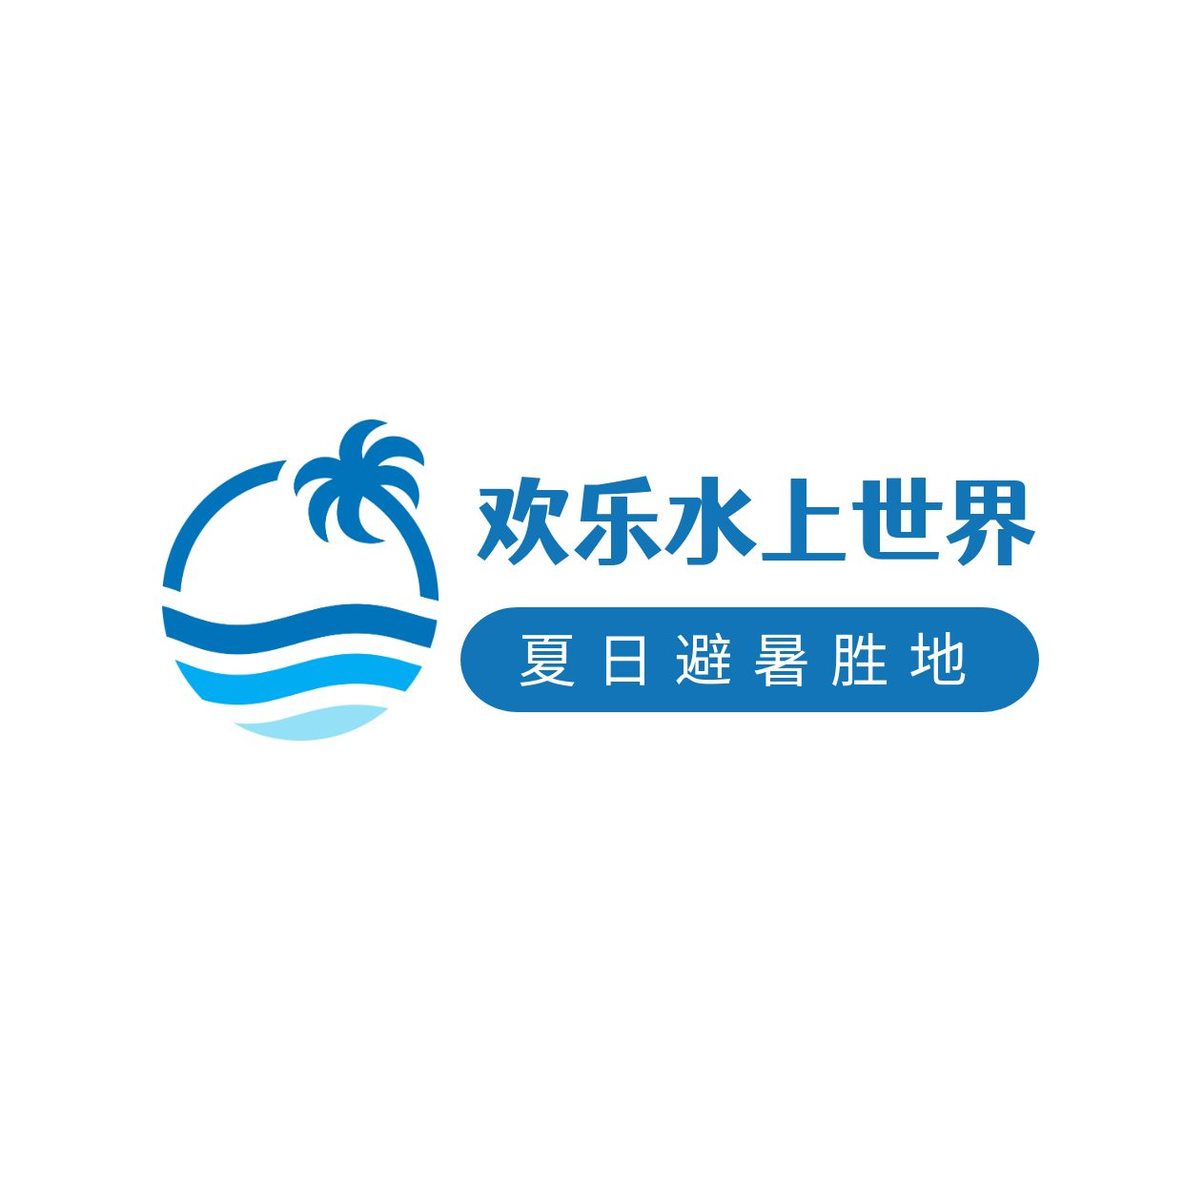 旅游蓝椰树logo